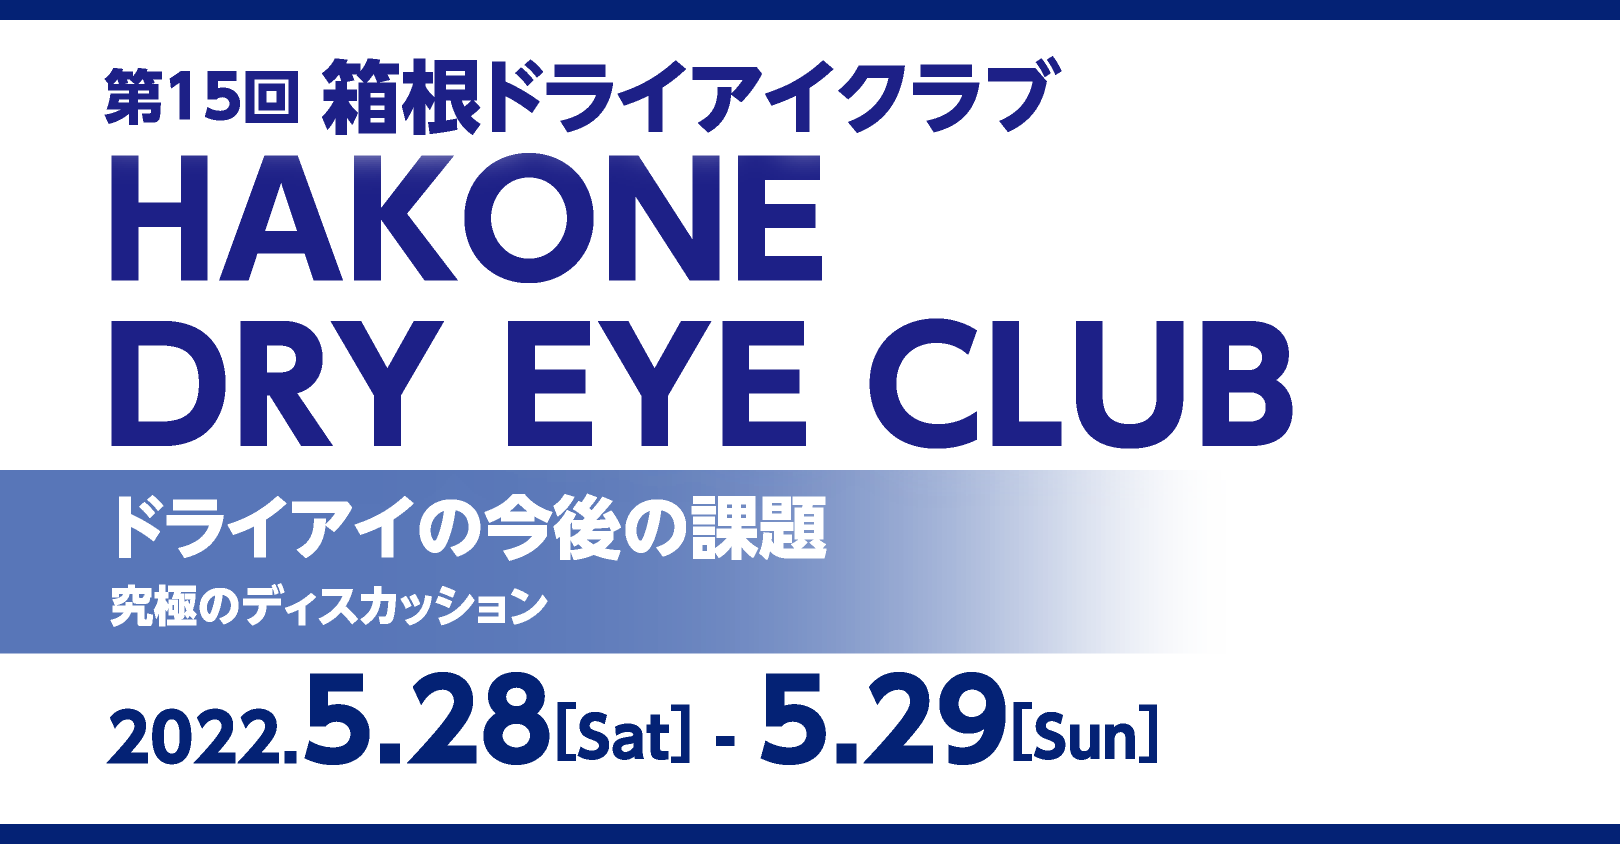 第15回箱根ドライアイクラブ  HAKONE DRY EYE CLUB
「ドライアイの今後の課題
　究極のディスカッション」
2022.5.28[Sat] - 5.29[Sun]